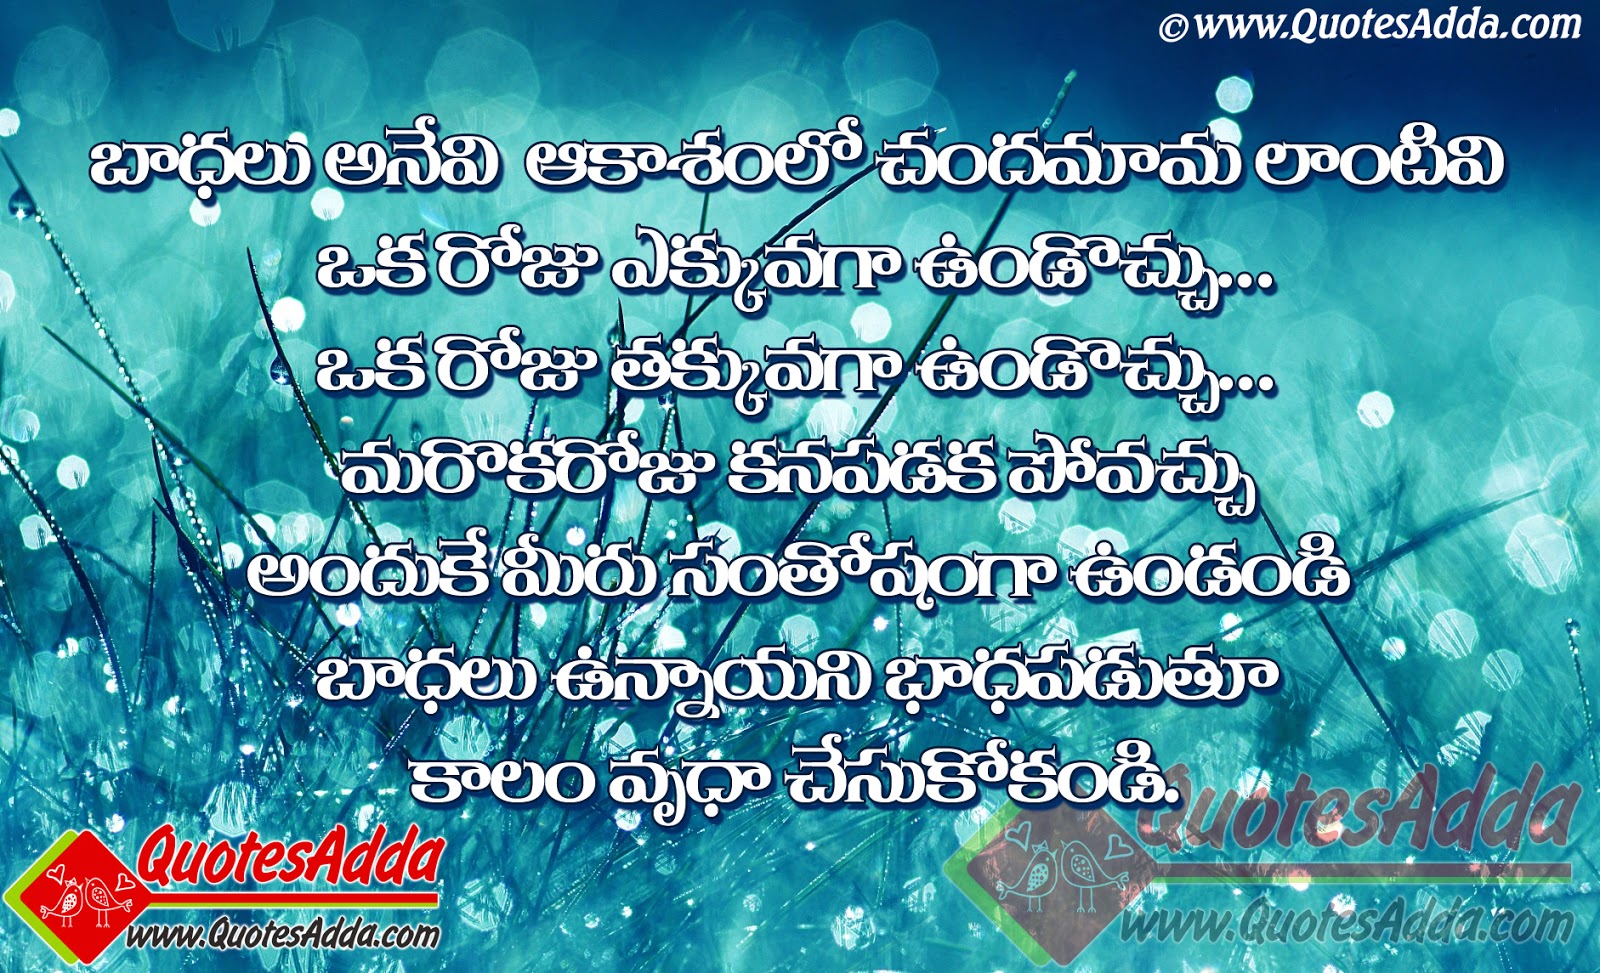 Telugu motivational quotes quotesgram Telugu Famous